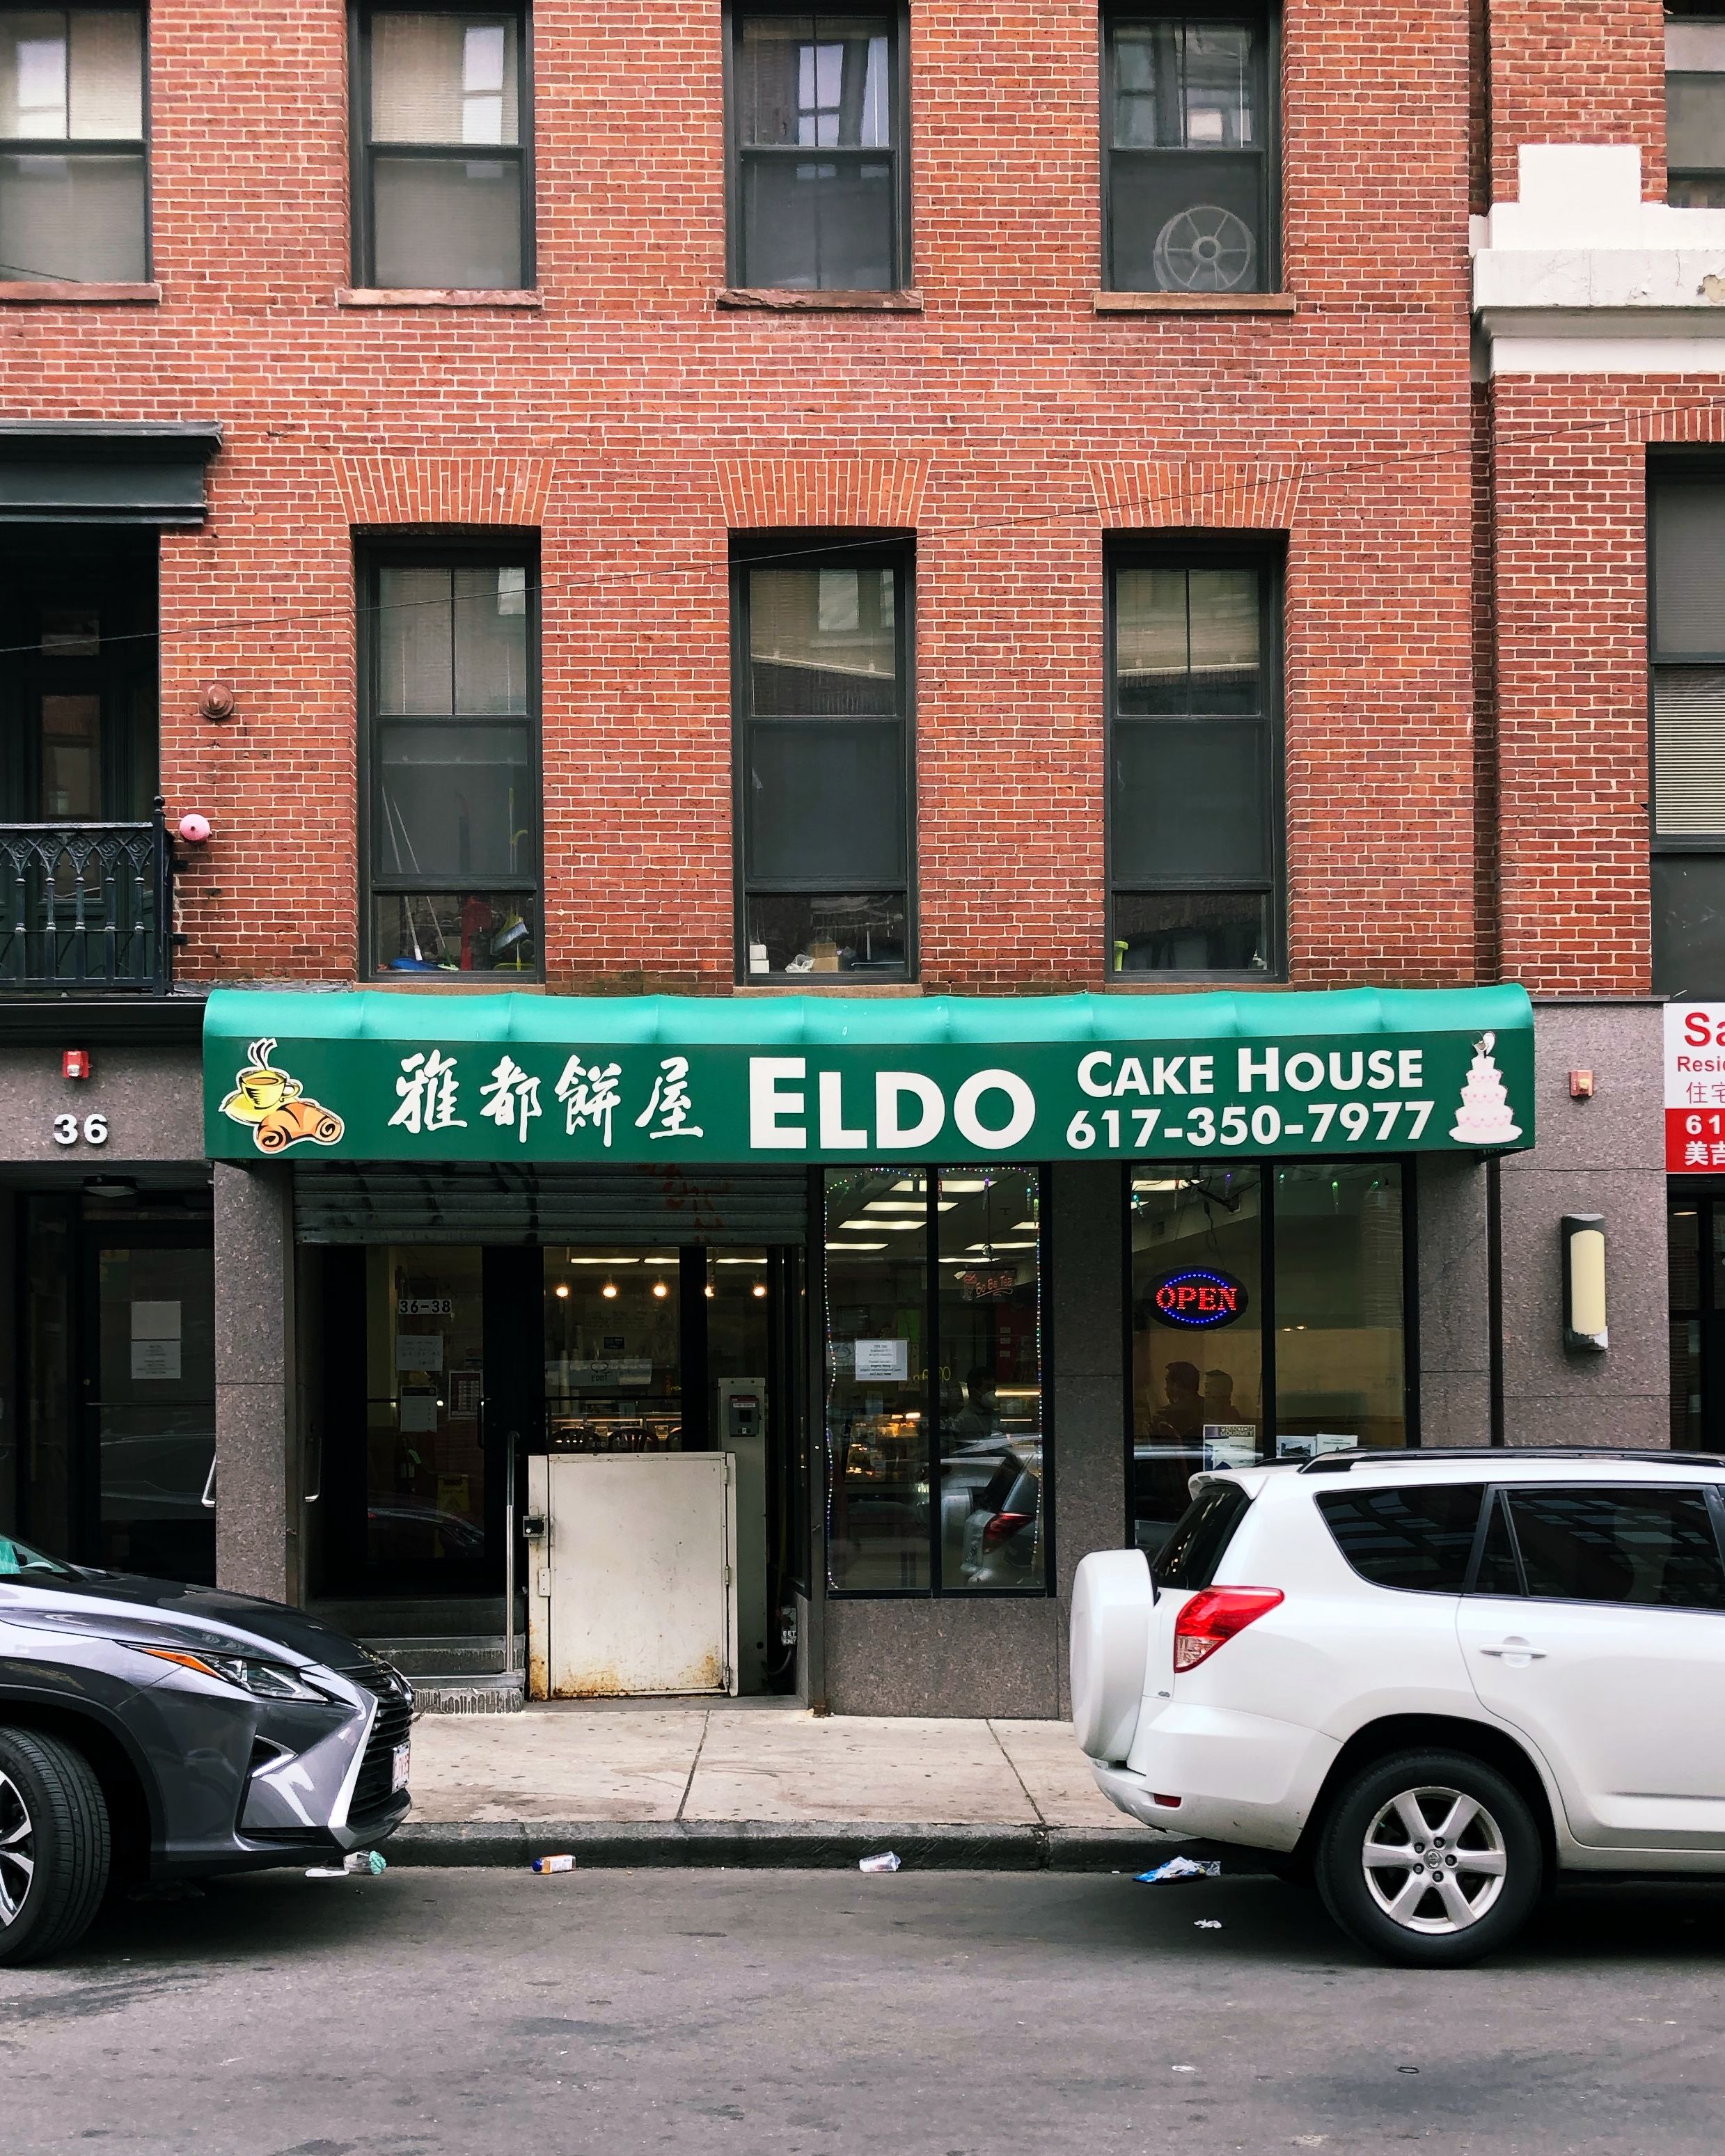 Eldo Cake House